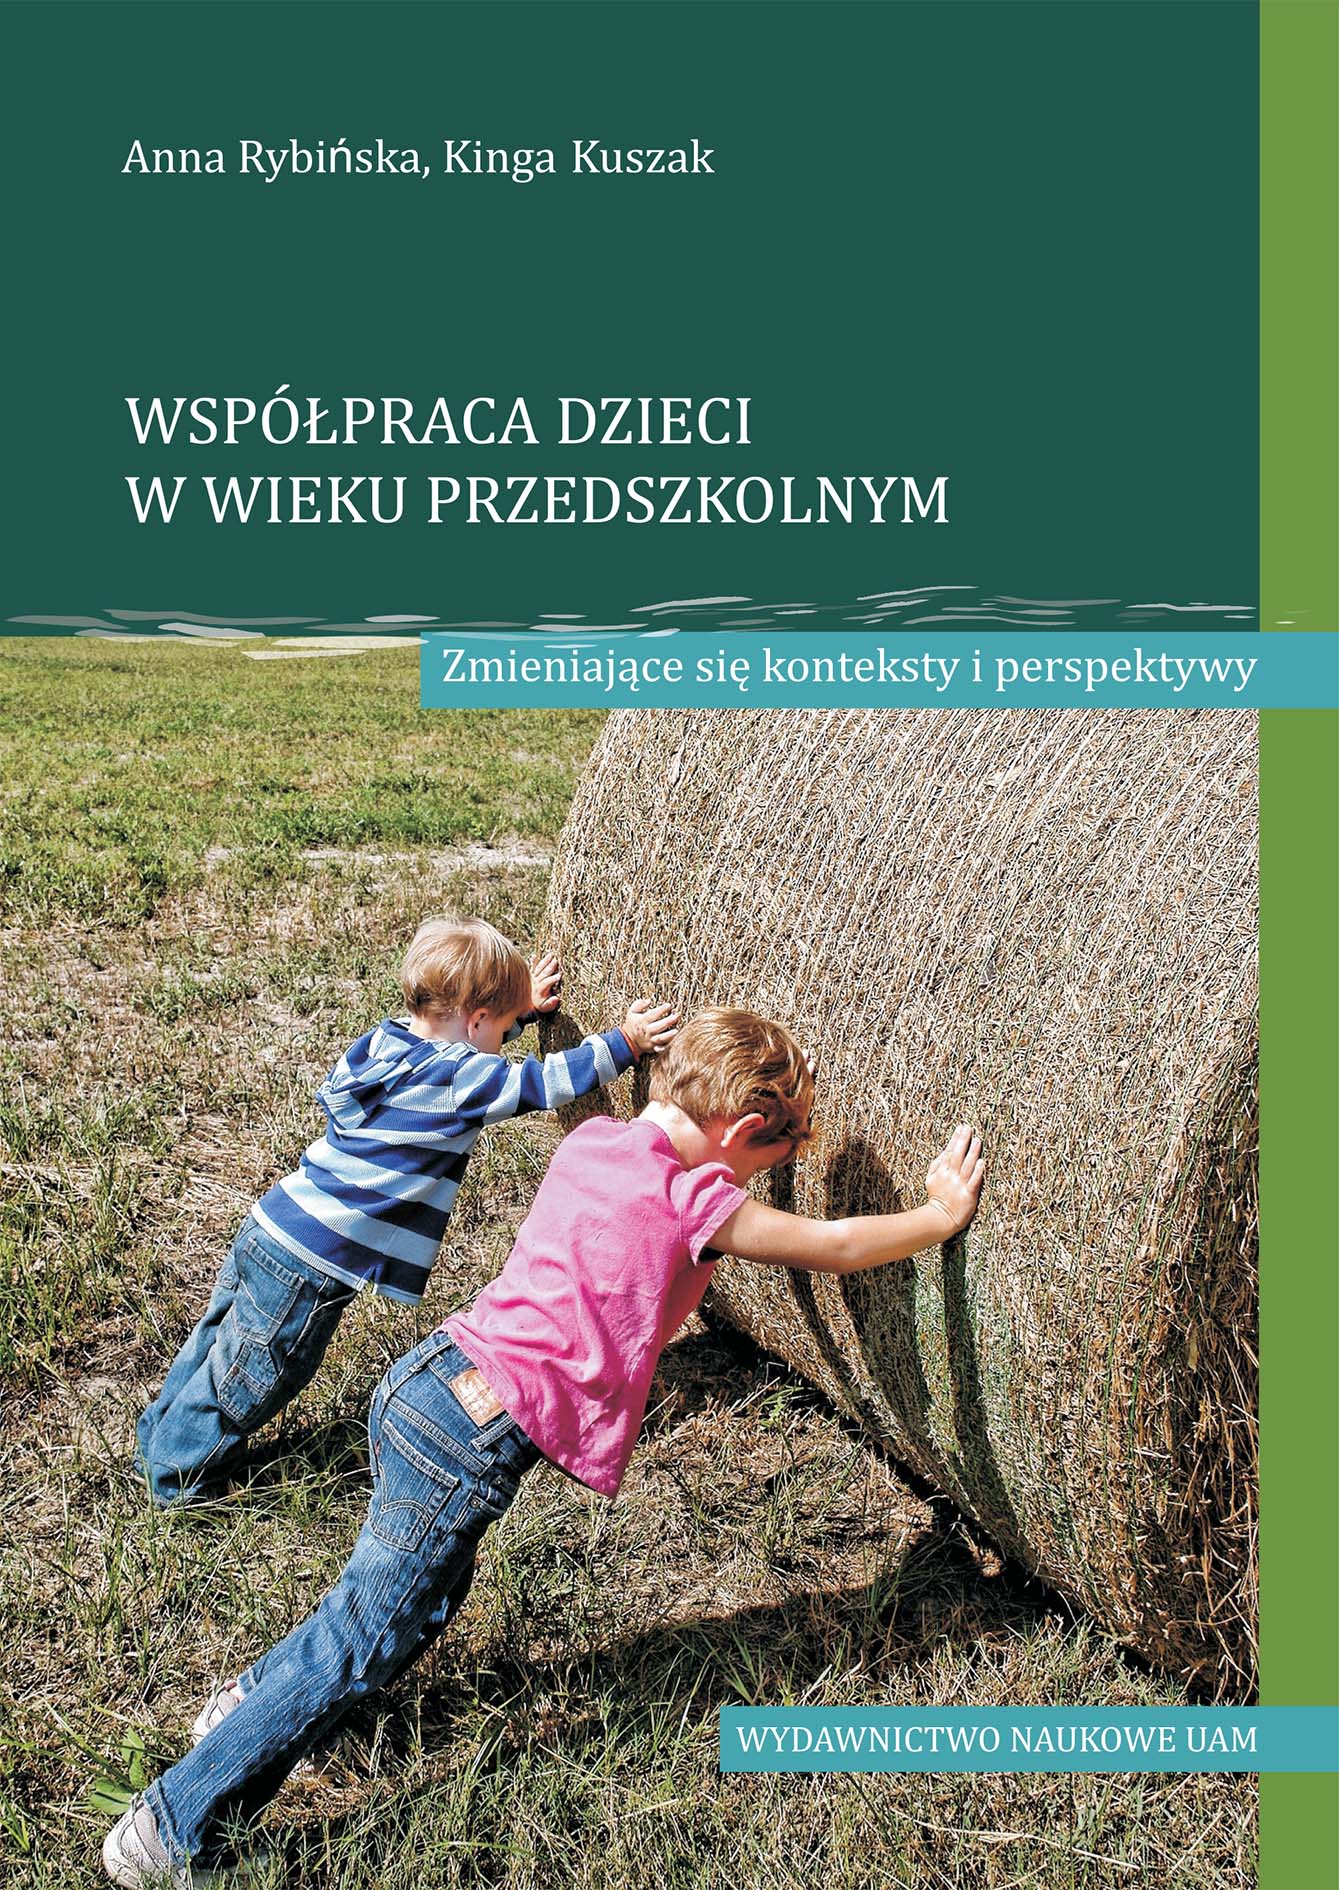 Cooperation of preschool children